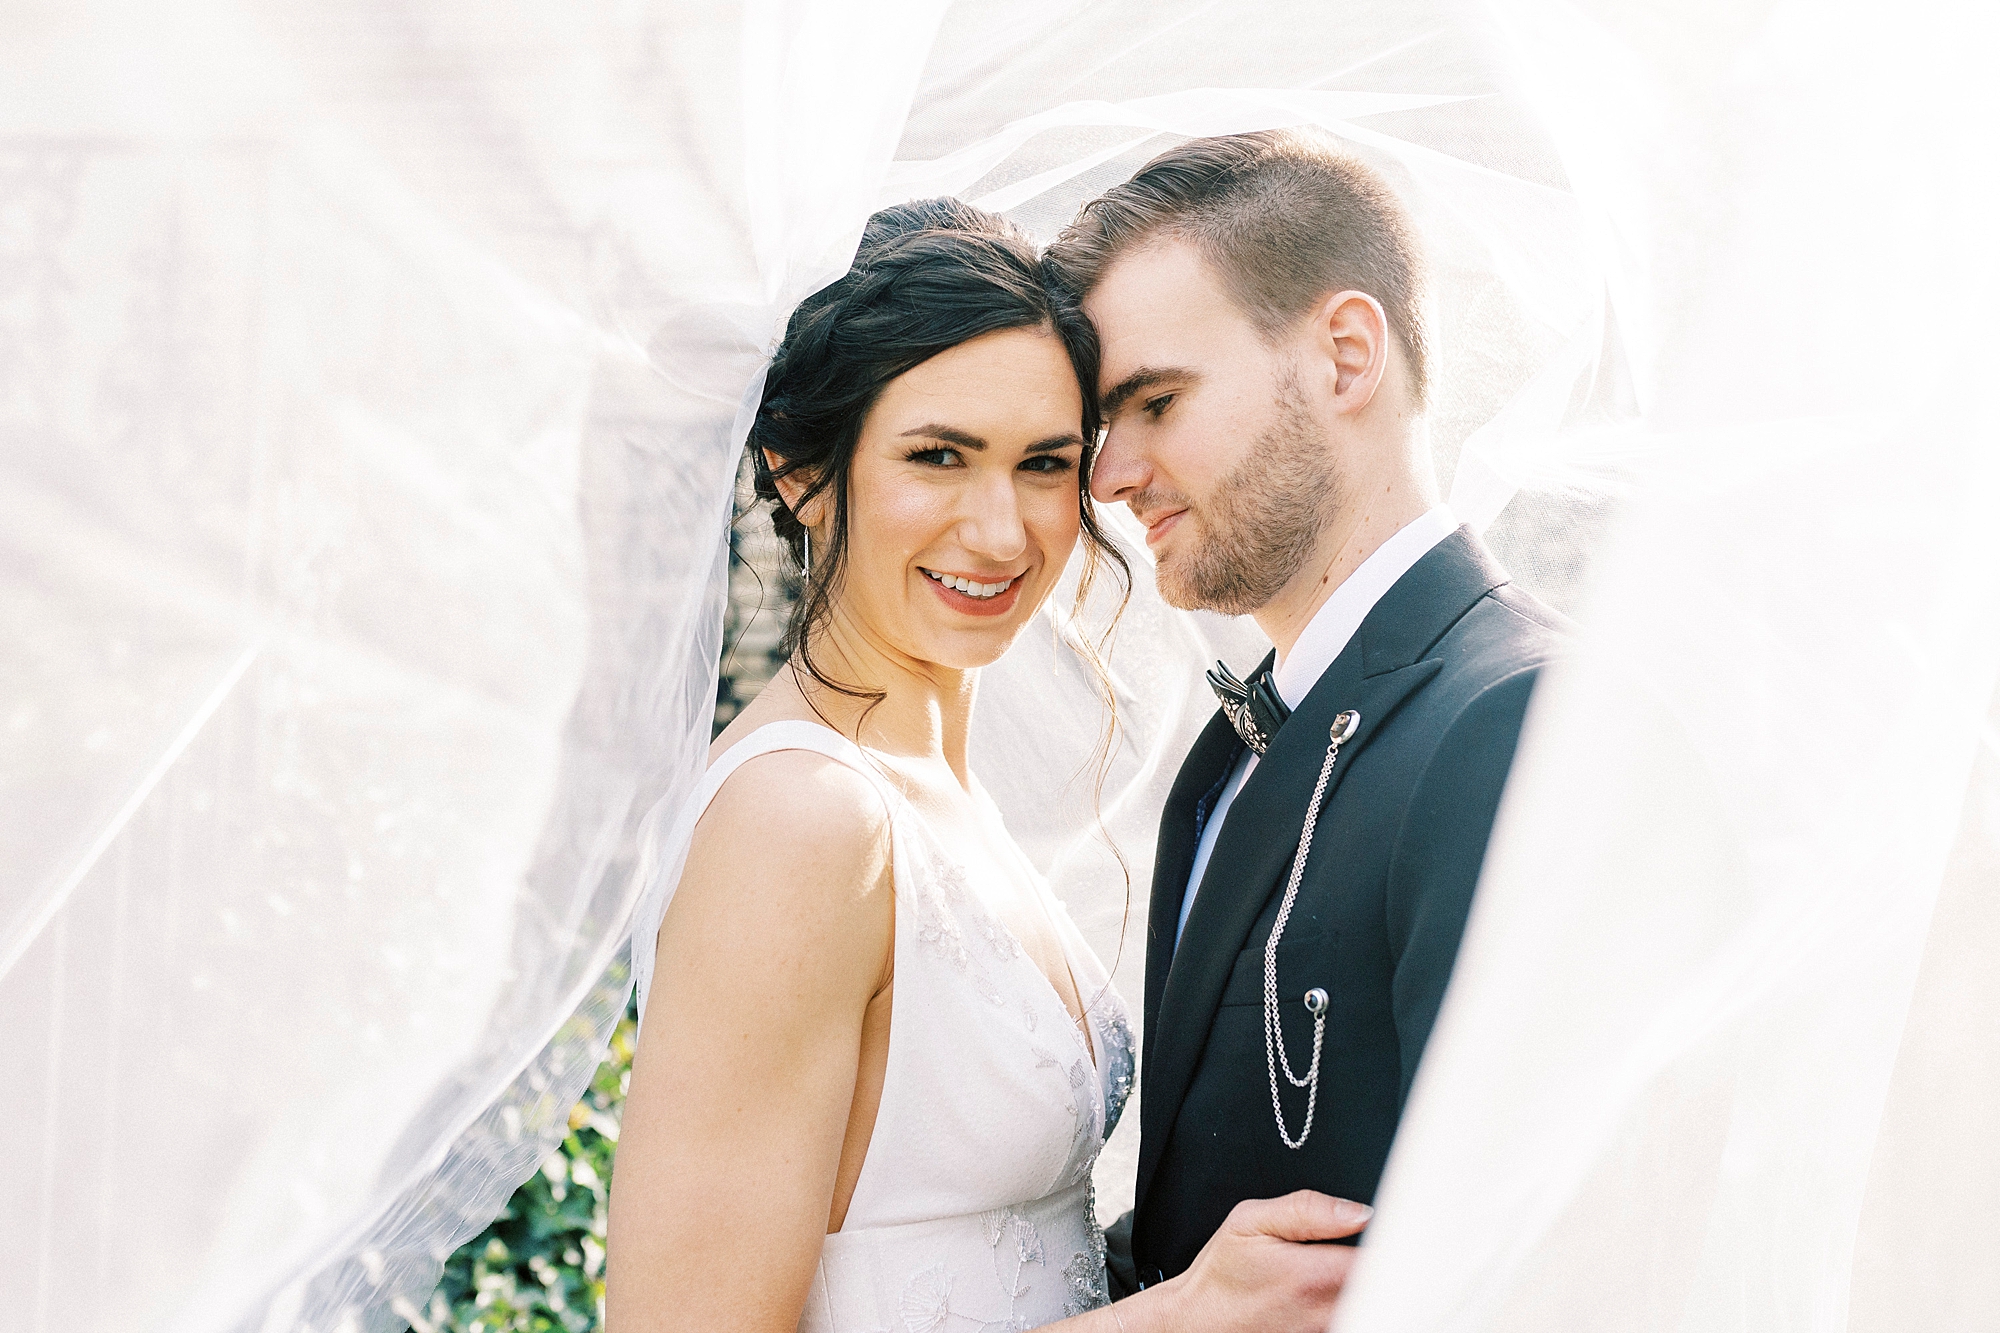 groom nuzzles bride's cheek under veil 